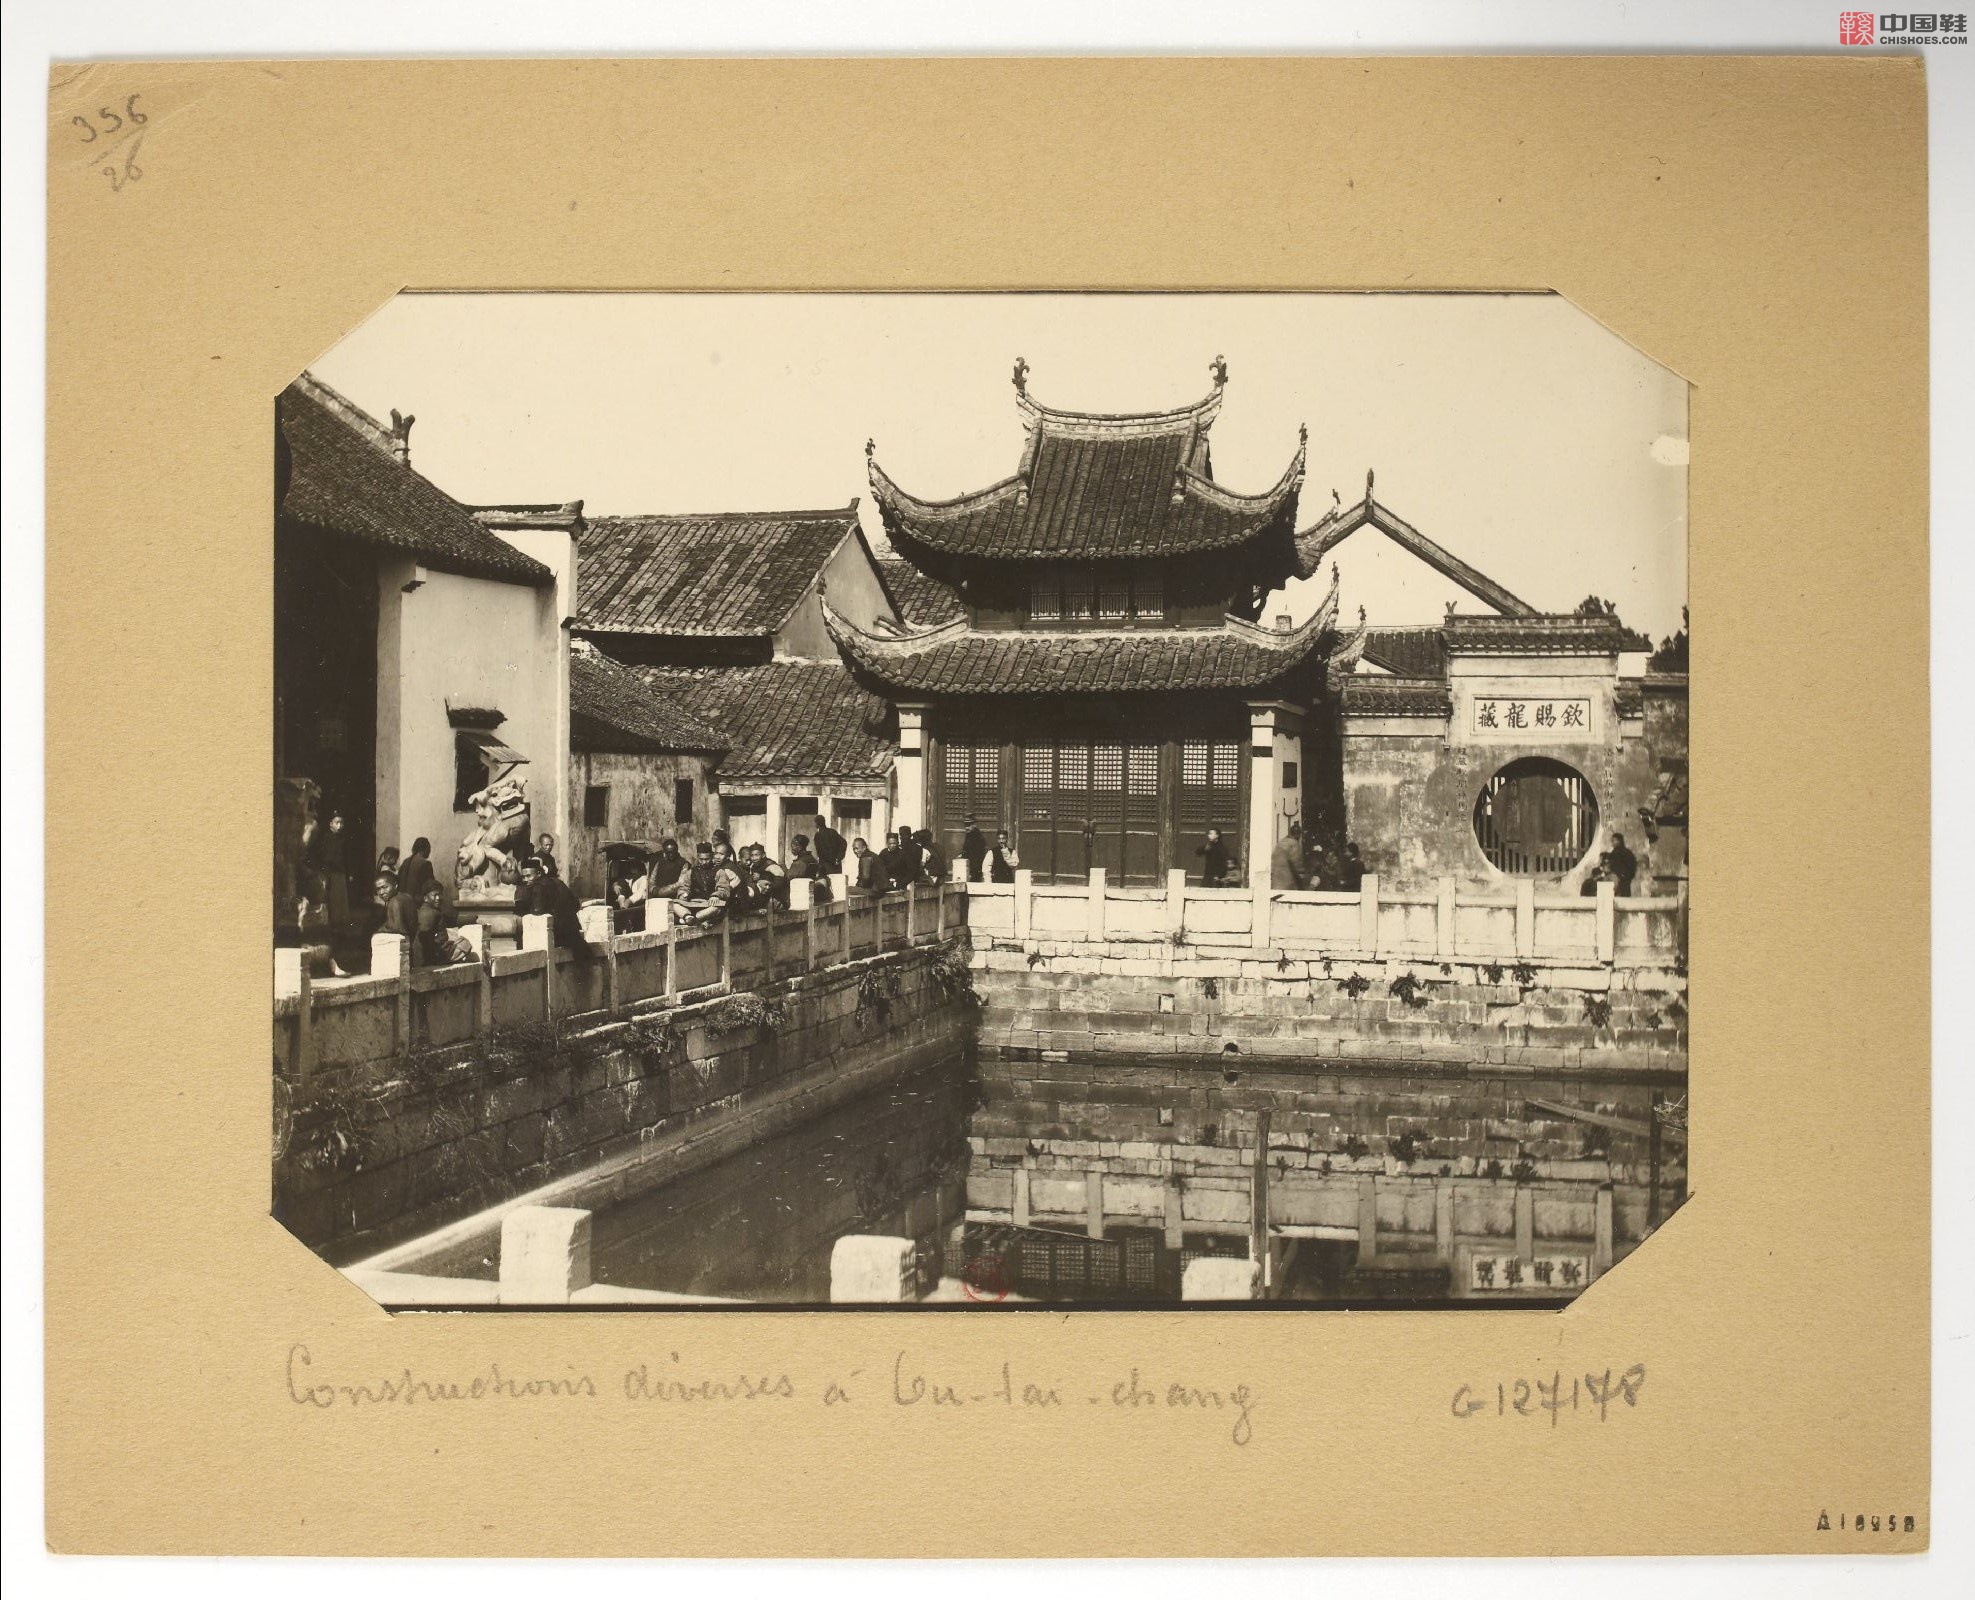 拉里贝的中国影像记录.415幅.By Firmin Laribe.1900-1910年_Page_187.jpg